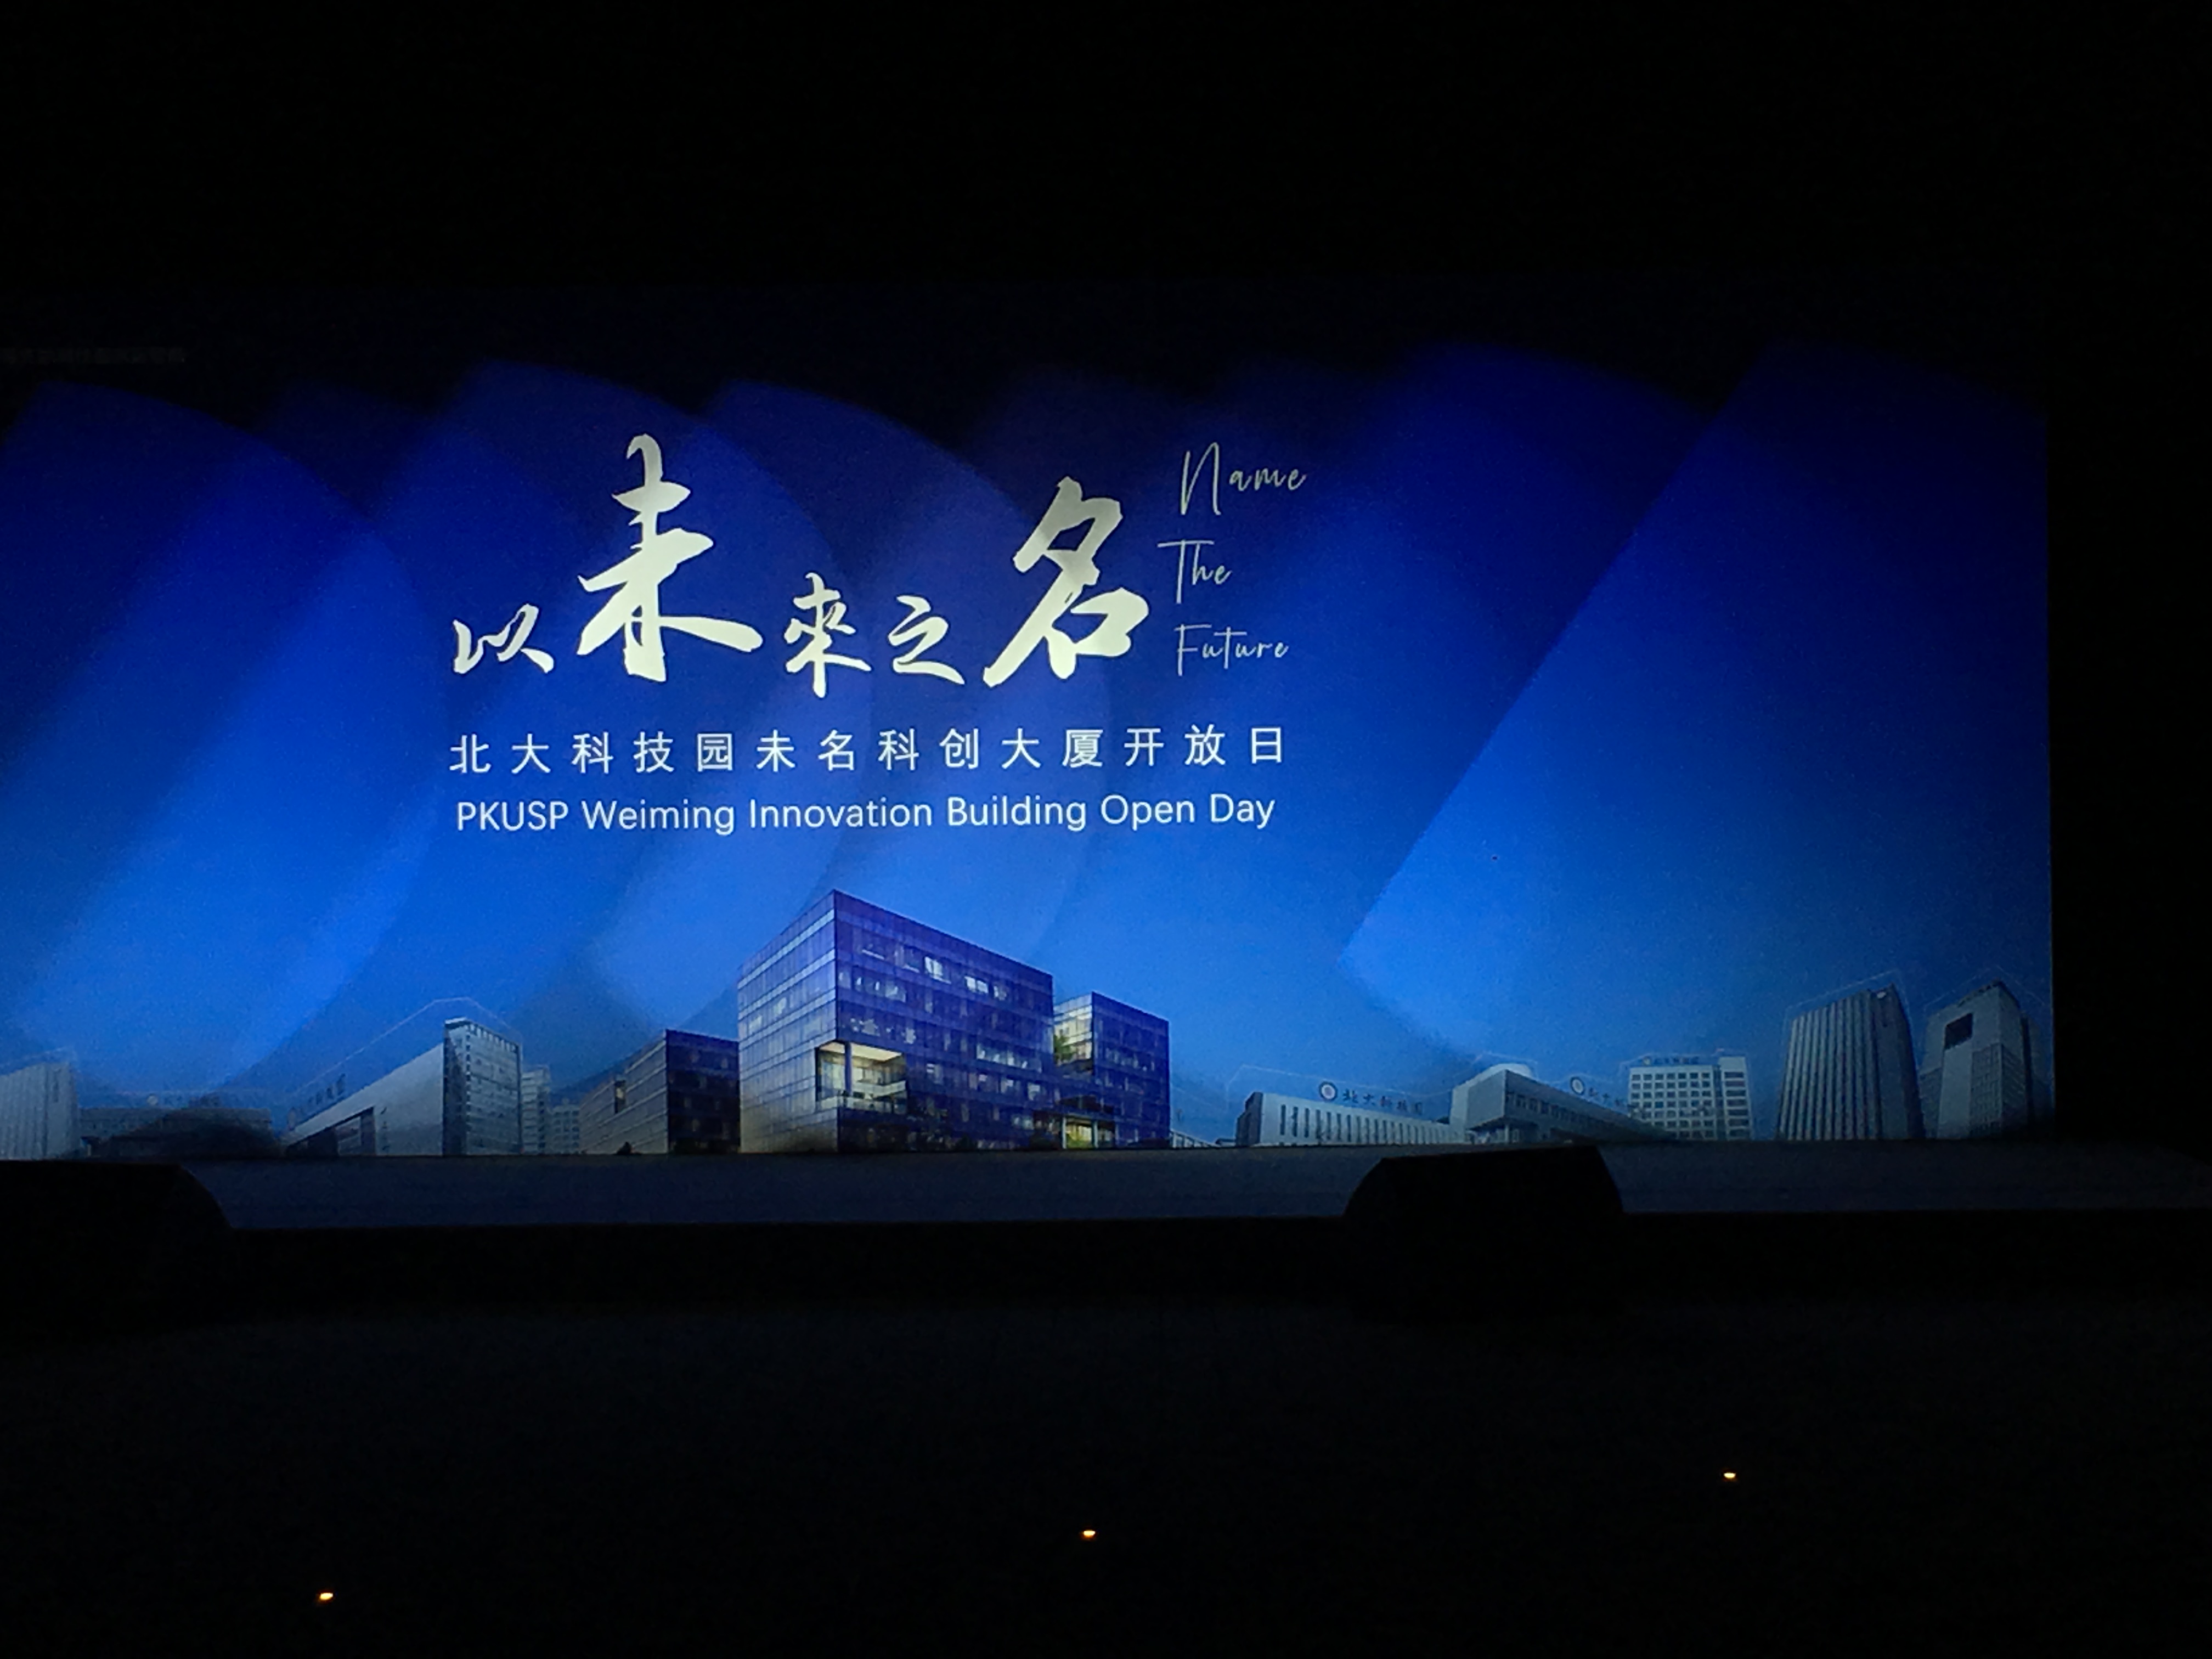 上海市上海led大屏出租舞台搭建厂家上海led大屏出租舞台搭建-上海会议现场布置-上海桌椅租赁